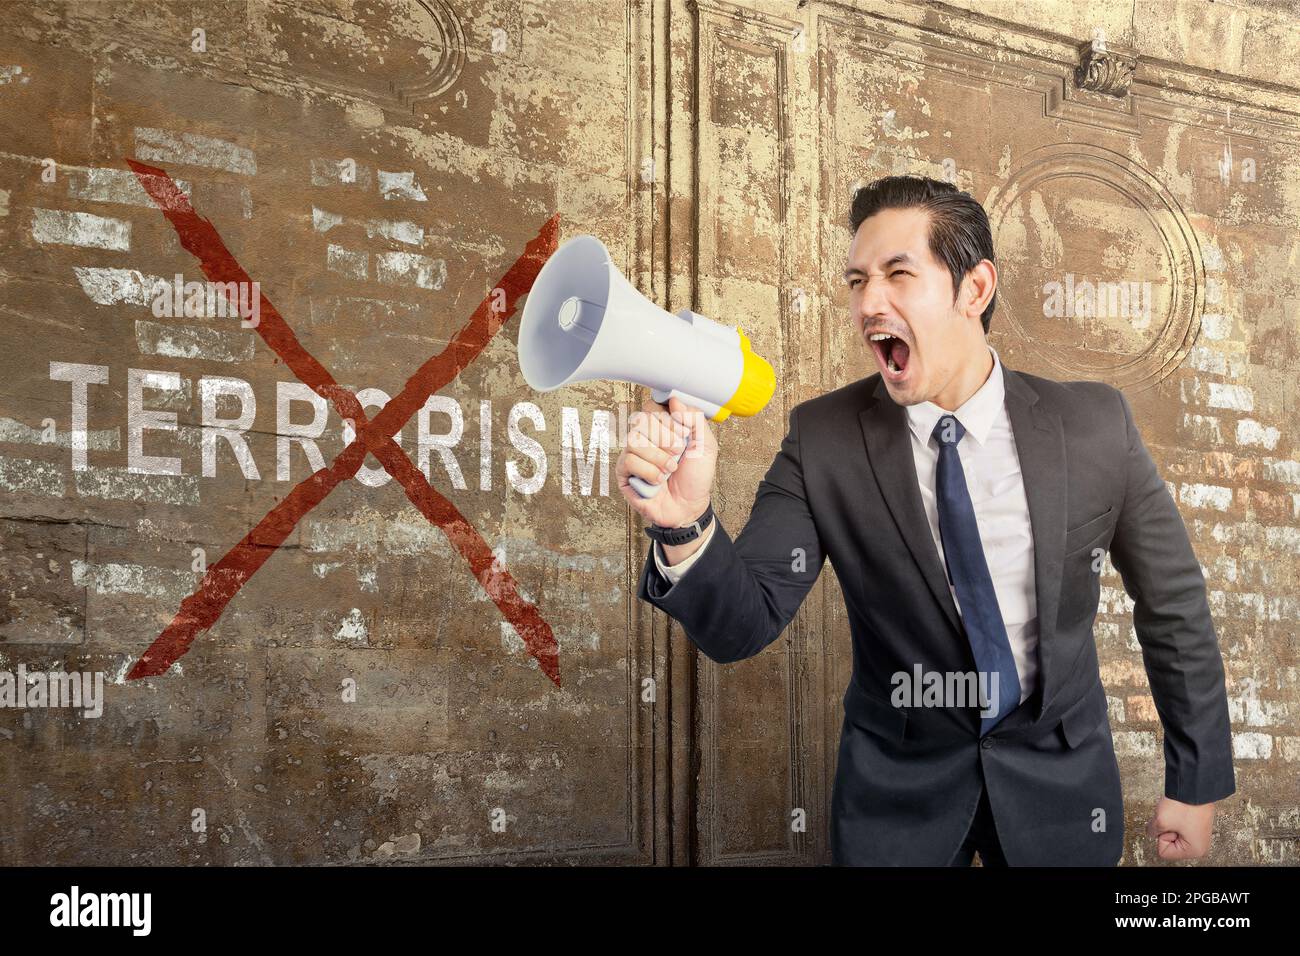 Ein Geschäftsmann, der ein Megafon mit dem Schild "Terror stoppen" an der Wand hält Stockfoto